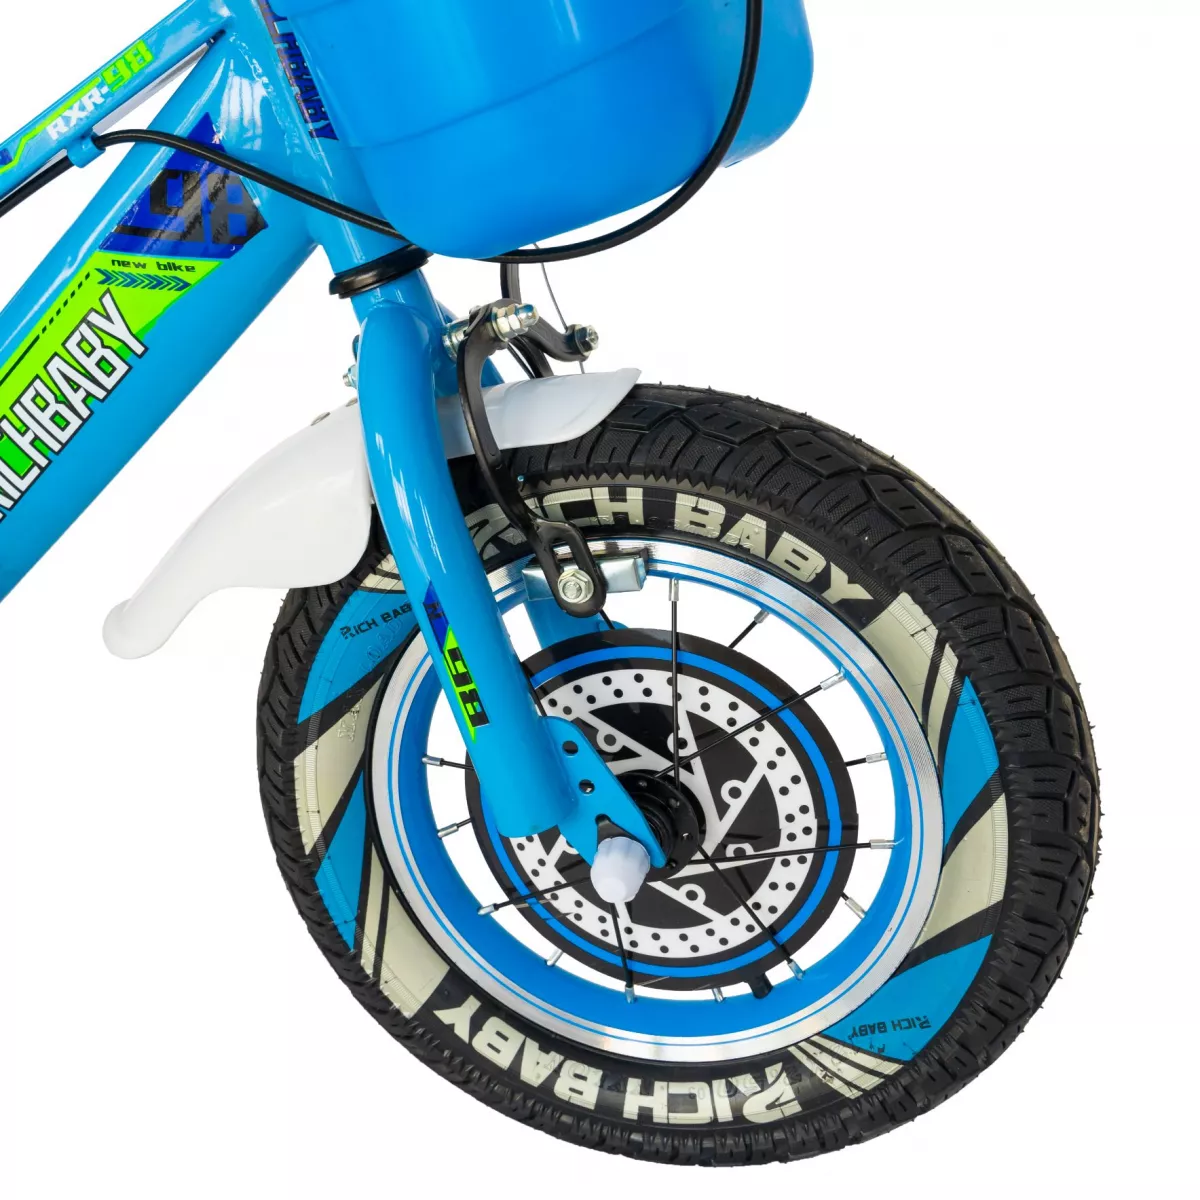 Bicicleta baieti Rich Baby R1407A, roata 14", C-Brake, roti ajutatoare cu LED, 3-5 ani, albastru/verde 